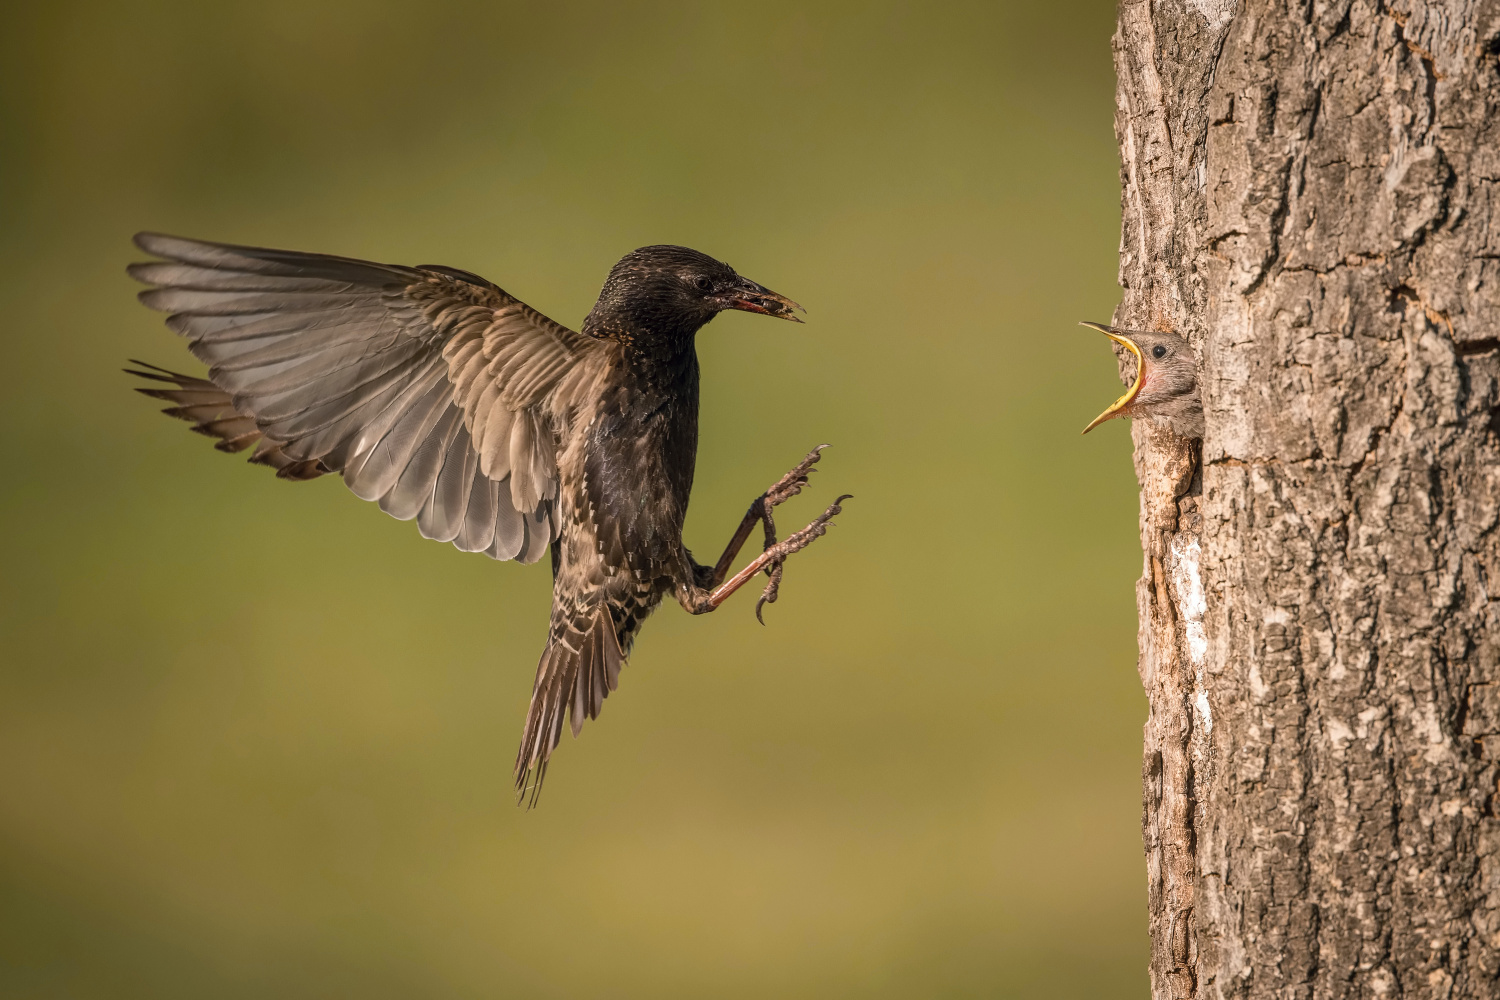 špaček obecný (Sturnus vulgaris) Common starling